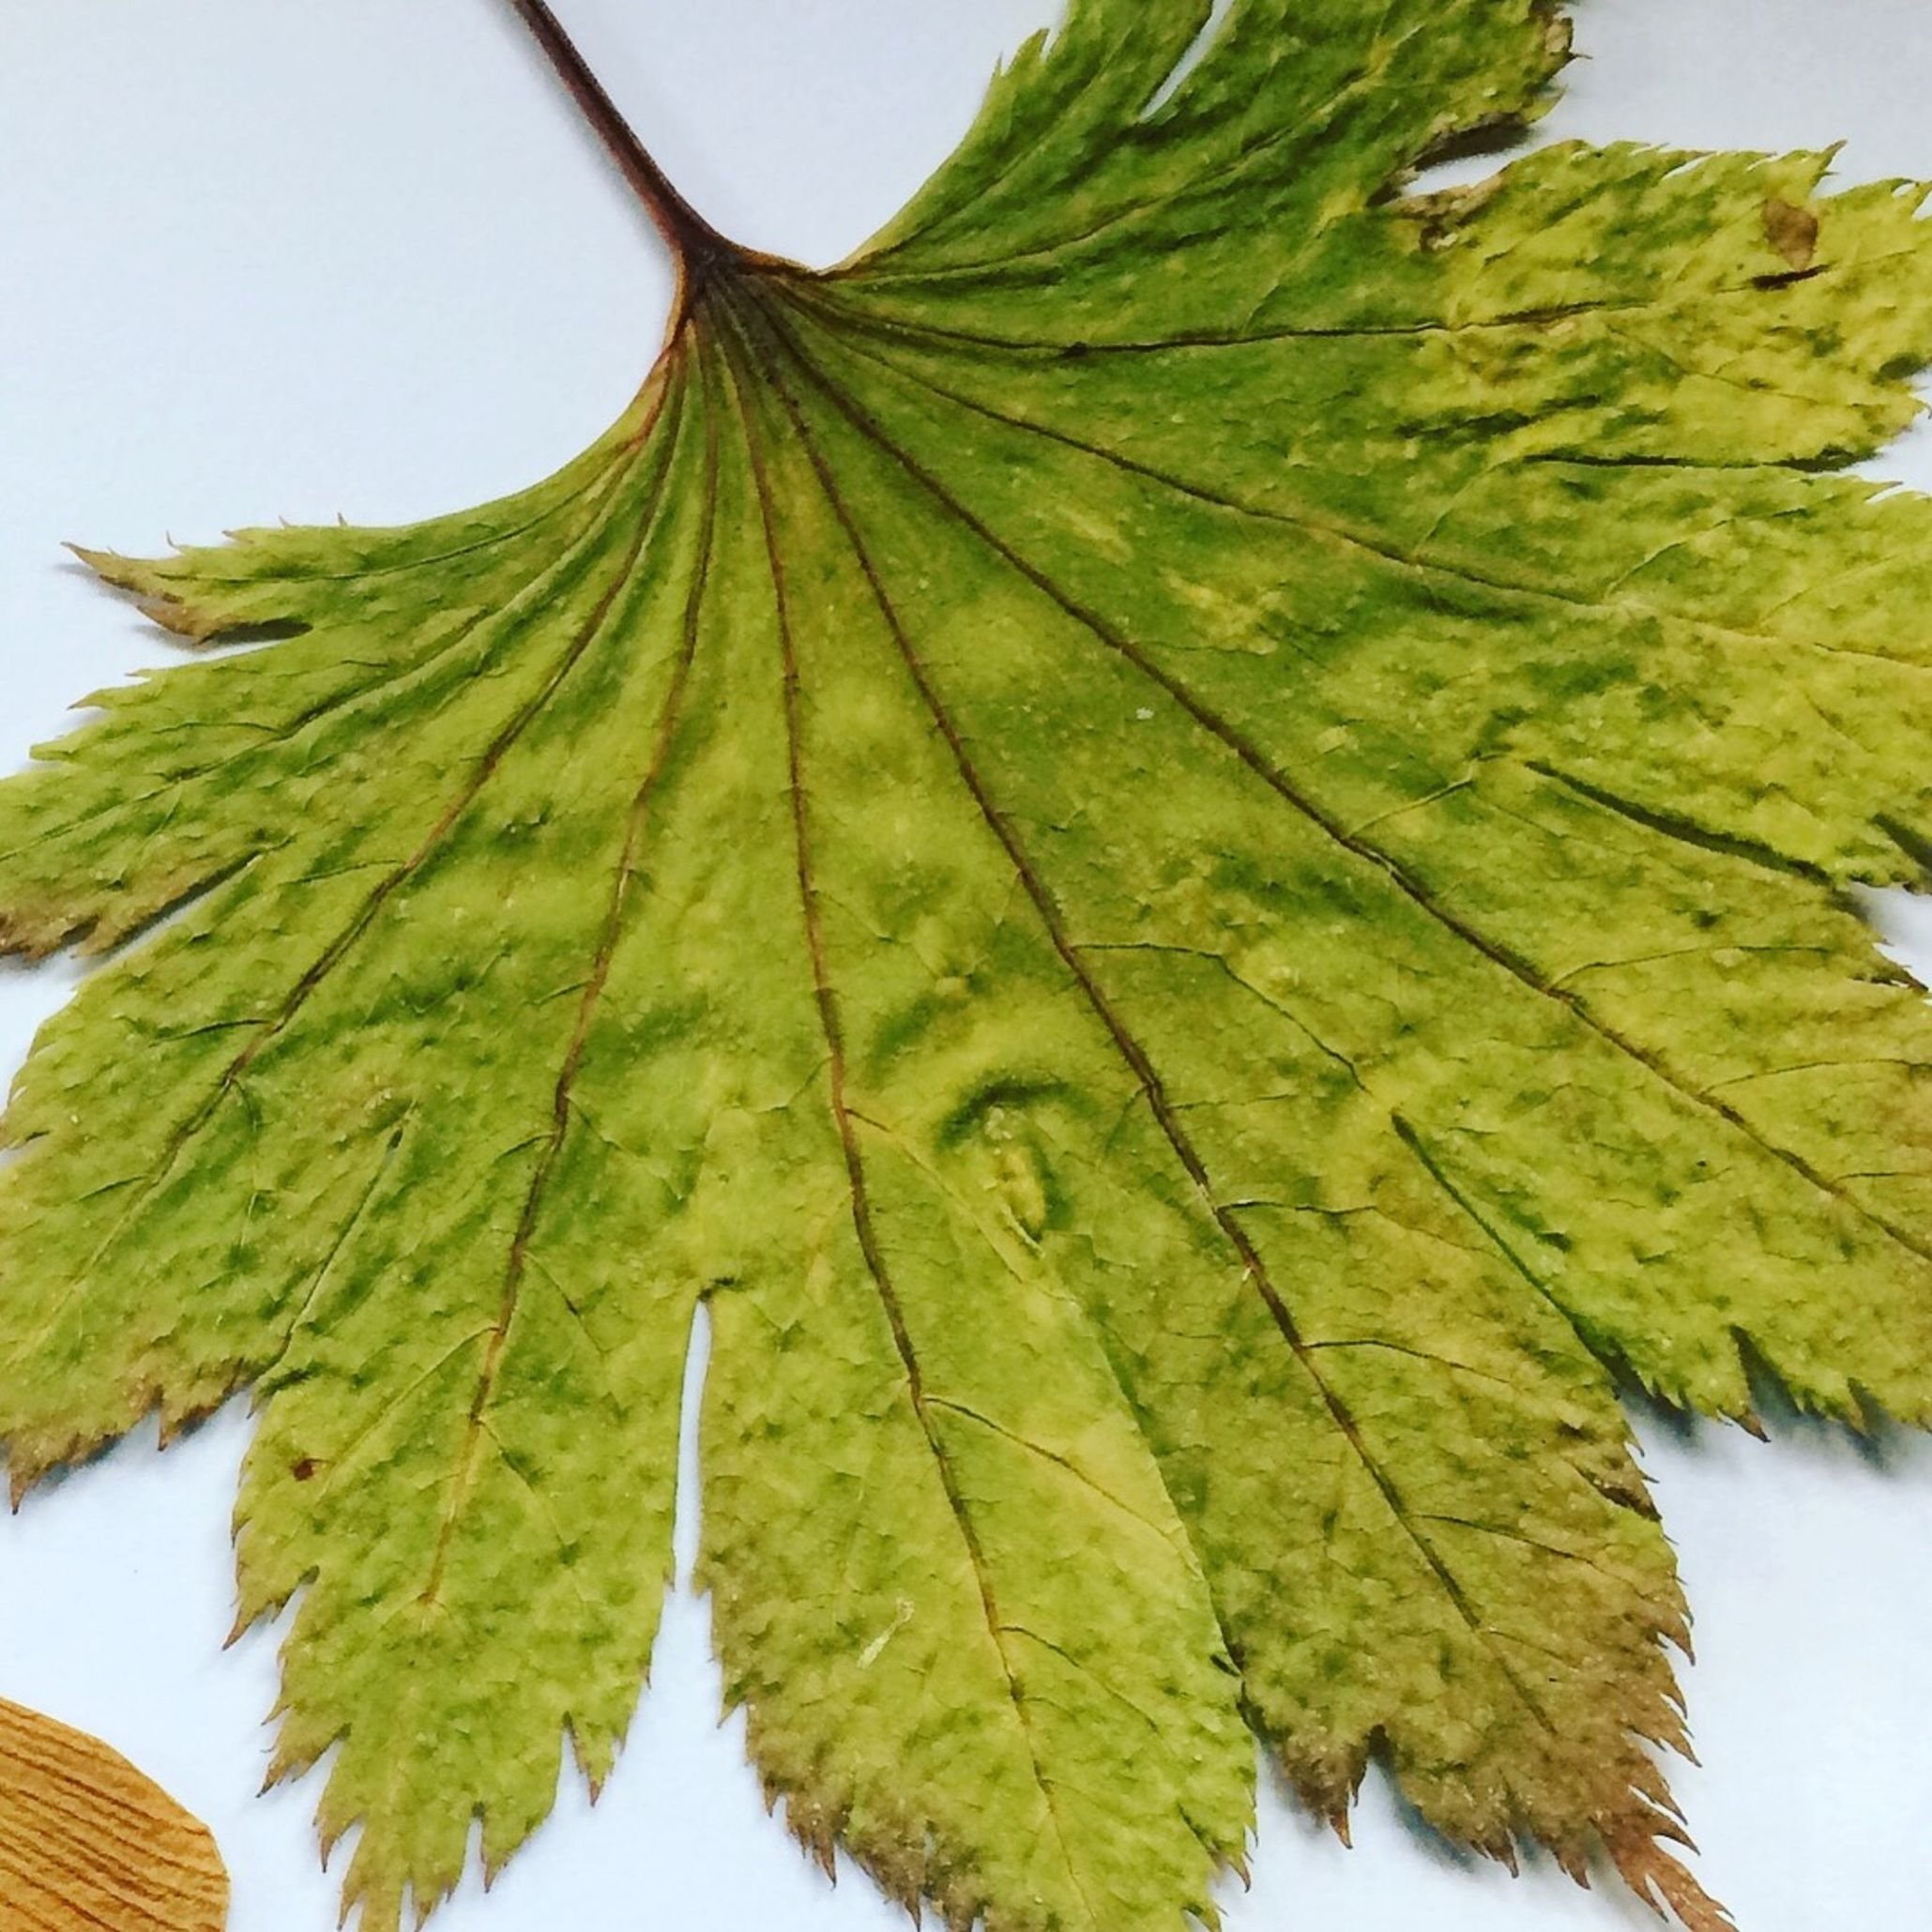 Original Japanese maple leaf